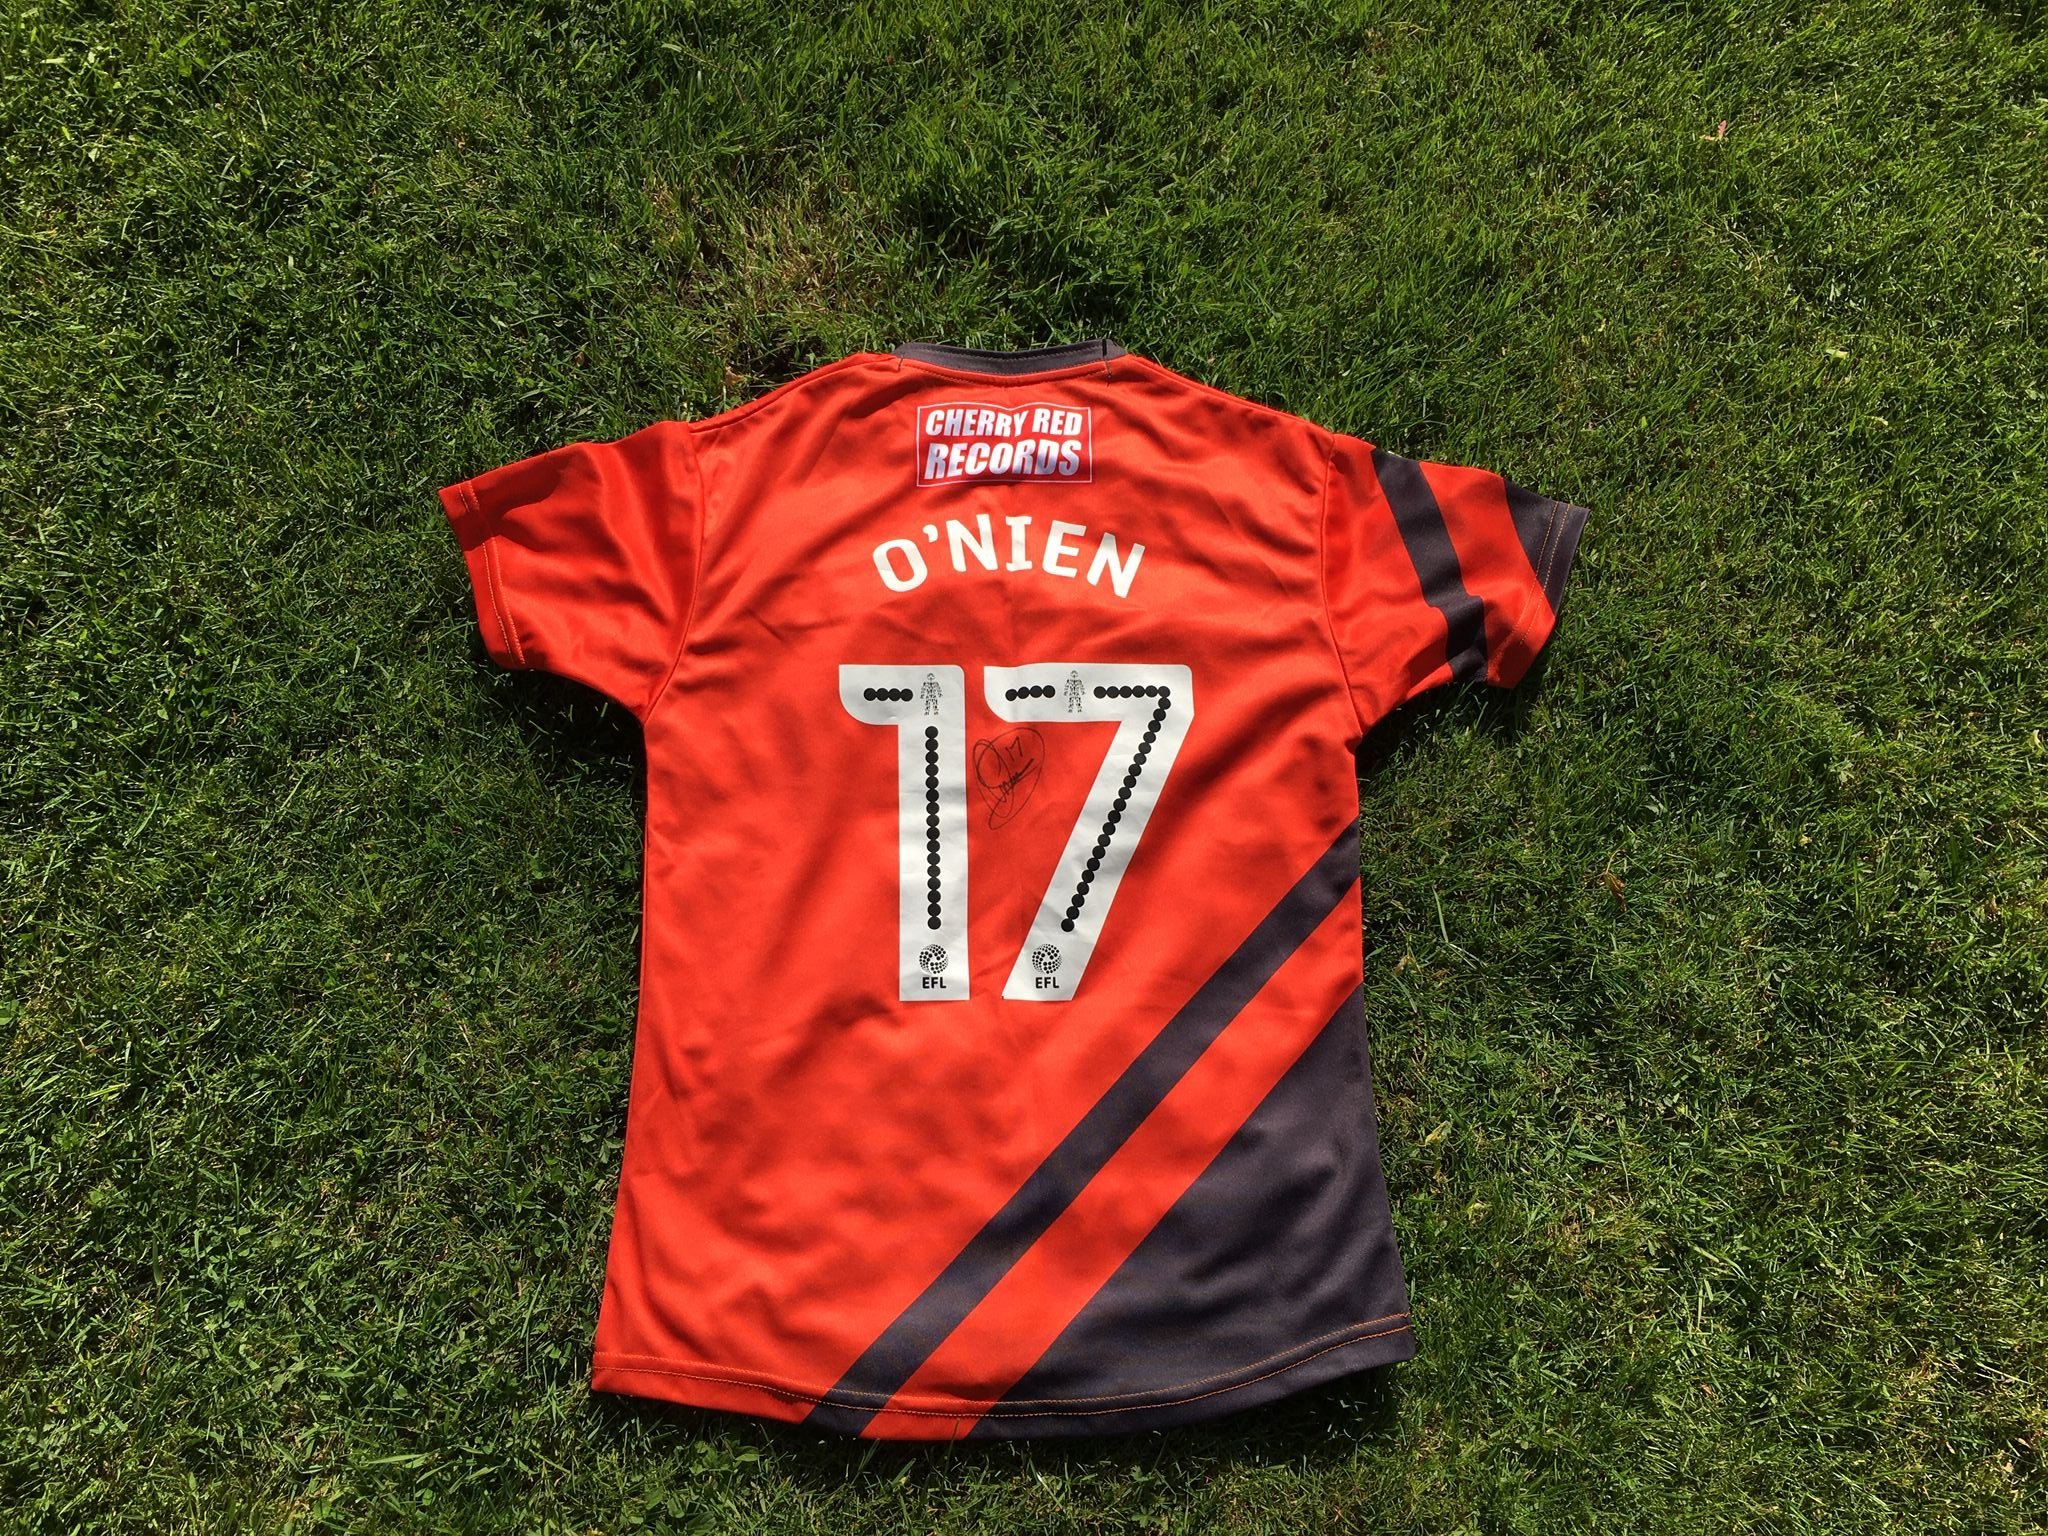 The away shirt signed Luke ONien for the 2017/18 season